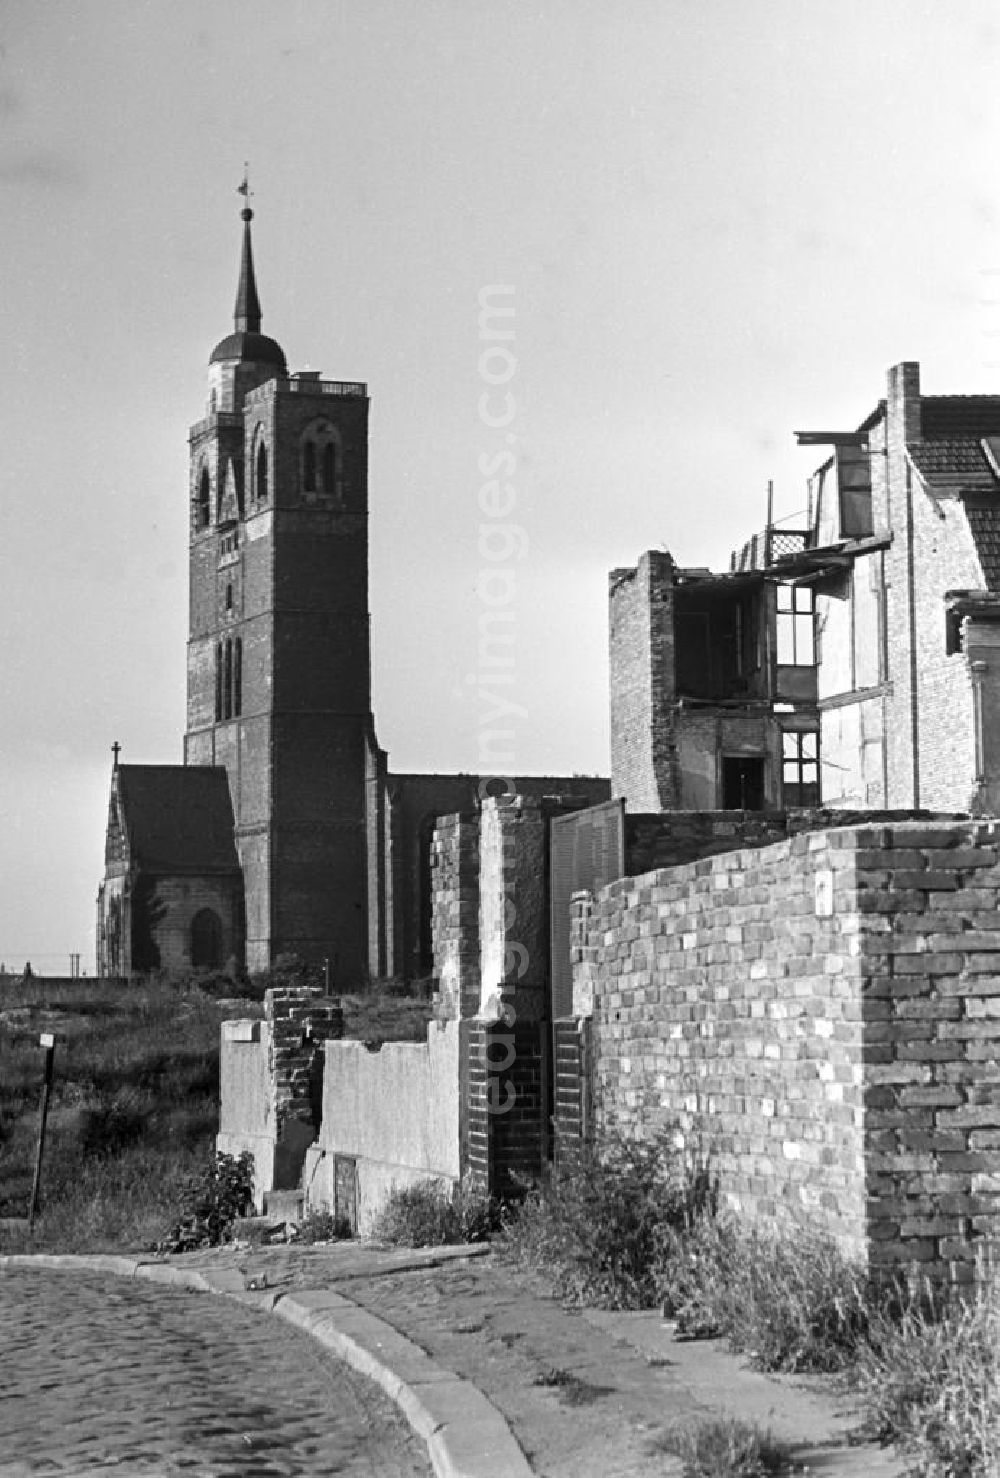 Magdeburg: Blick auf die St.-Johannis-Kirche in Magdeburg. Nachdem Magdeburg durch die Bombenangriffe im Zweiten Weltkrieg weitgehend zerstört worden war, begann in den 5